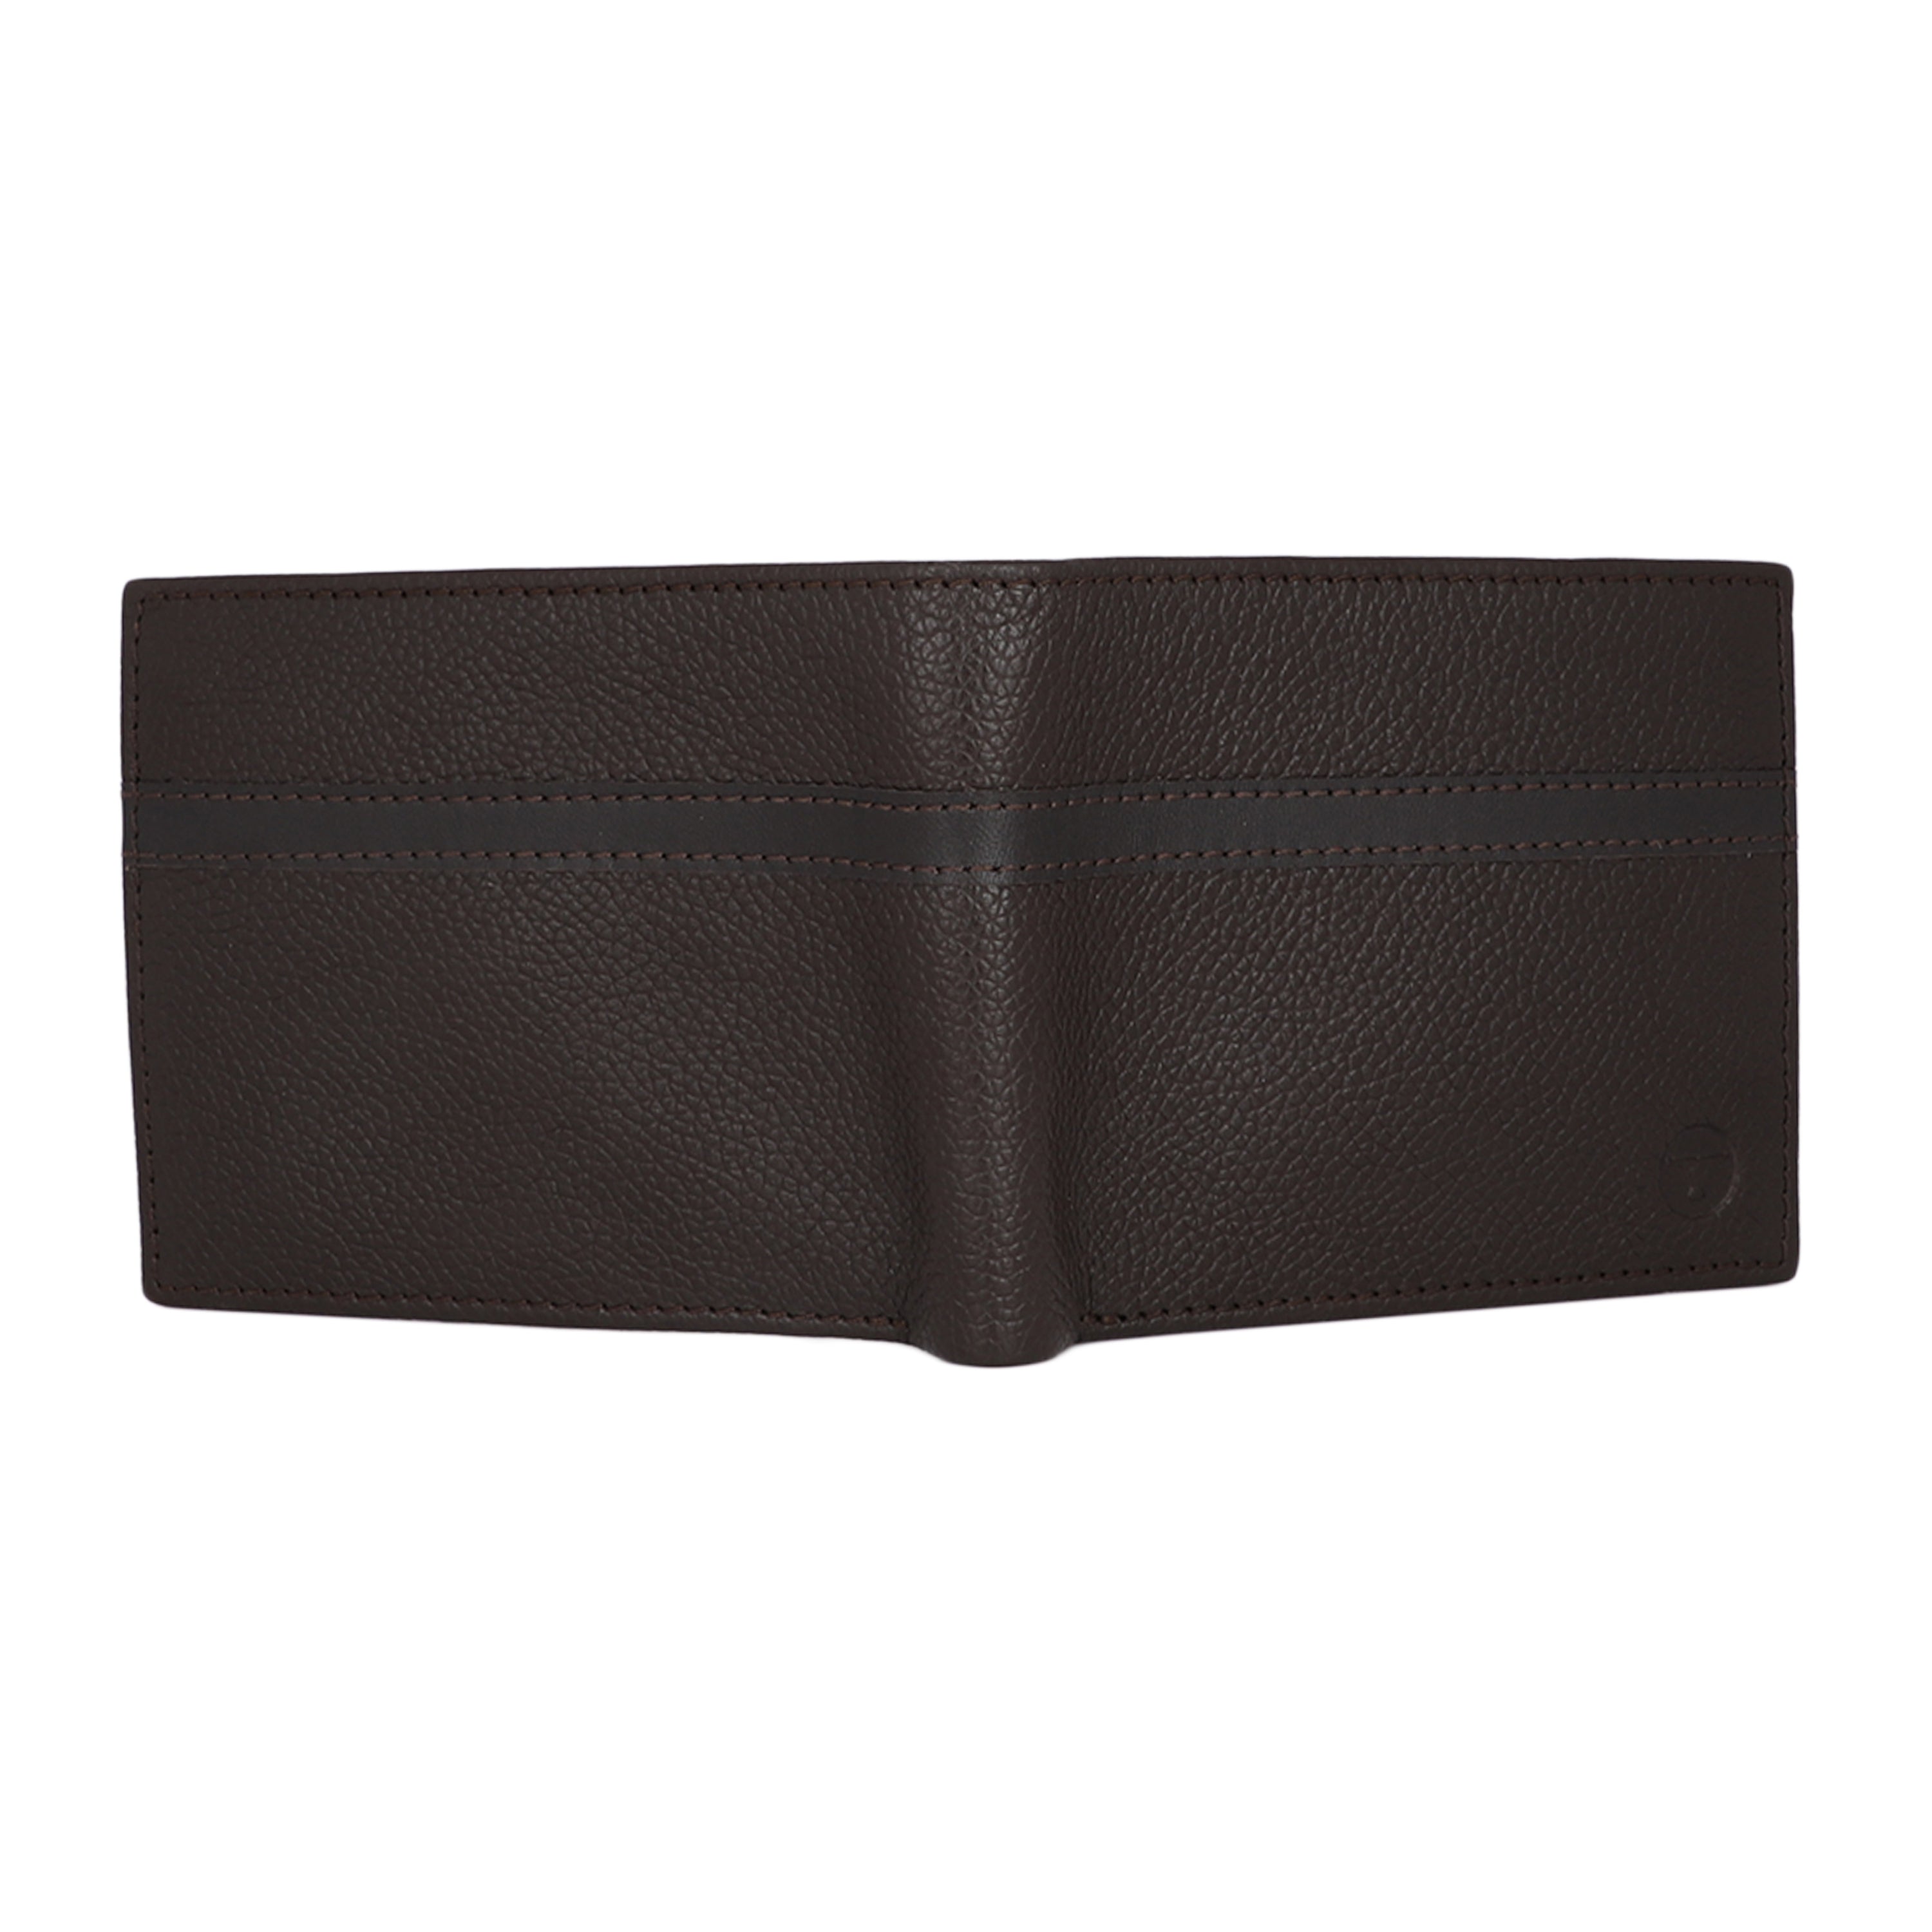 UFFICIO Men Genuine Leather Wallet | UFF2107W